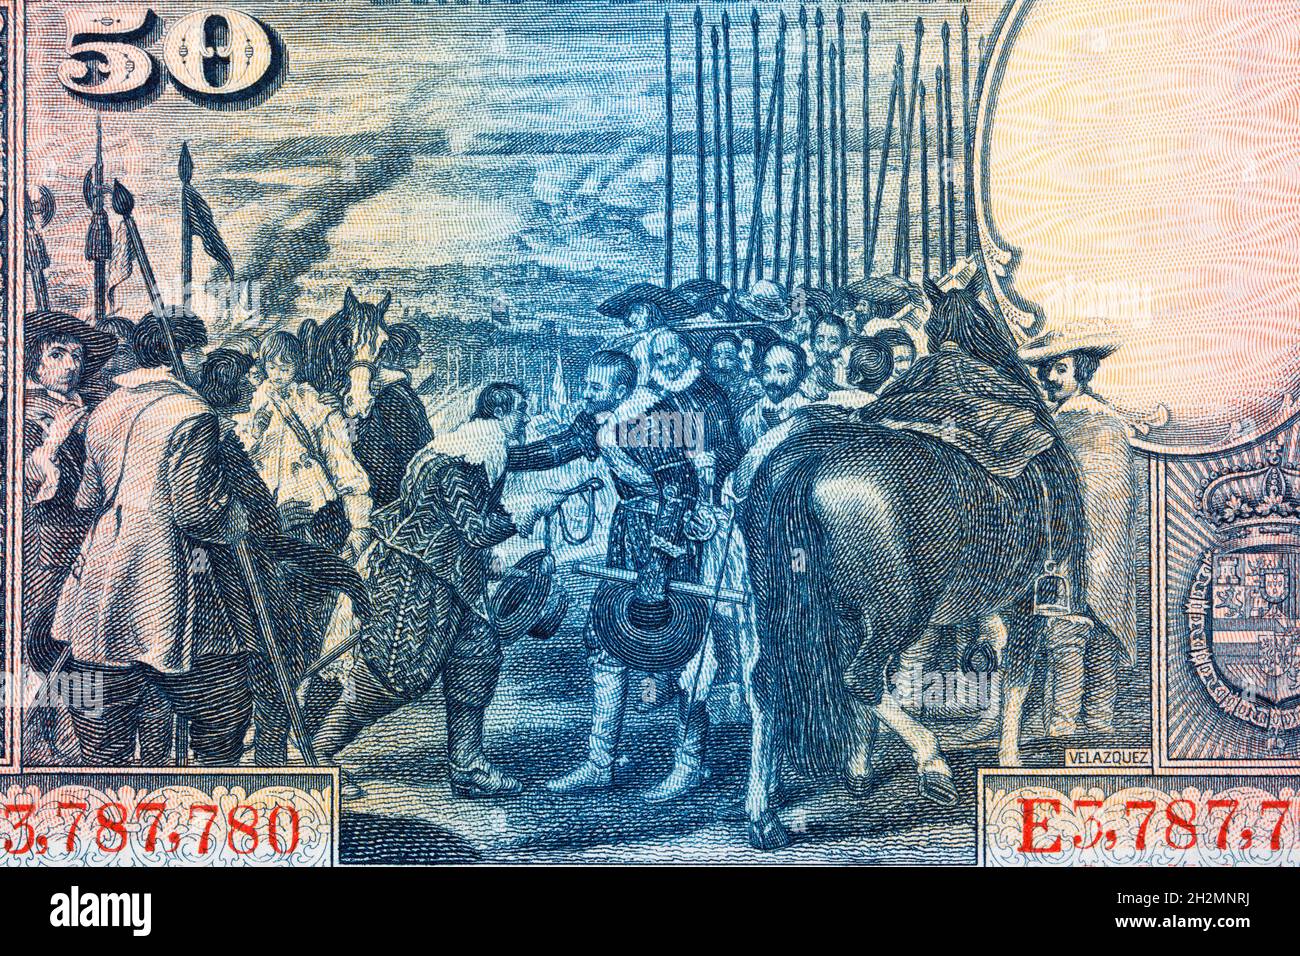 Kapitulation von Breda - Gemälde von Diego Velazquez aus altem spanischem Geld Stockfoto